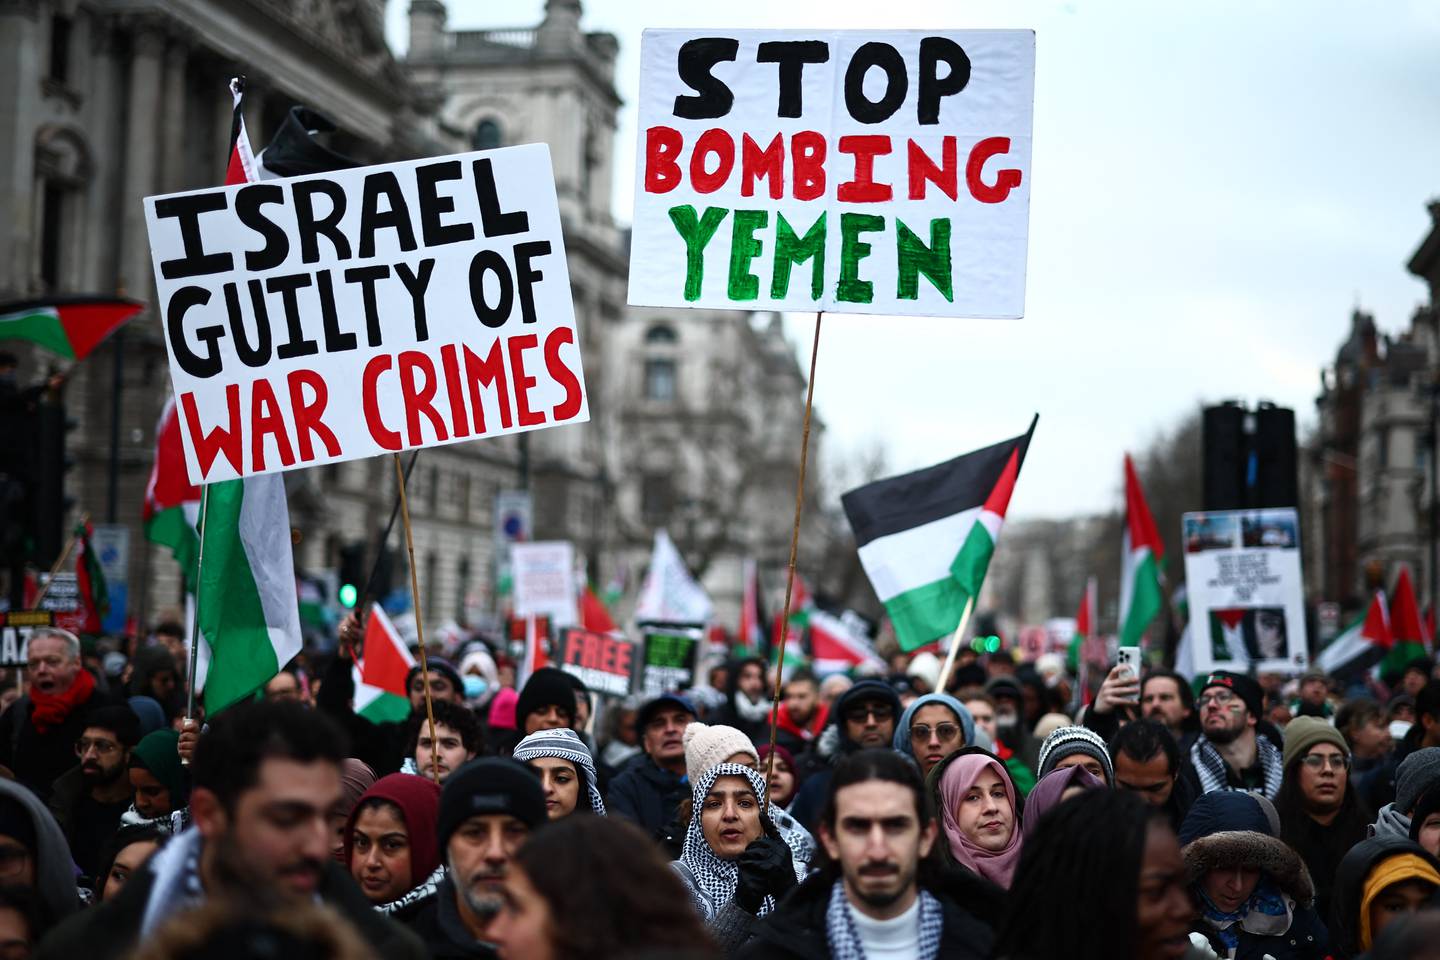 Activistas y partidarios pro palestinos ondean banderas y portan pancartas, incluido un cartel de 'Detengan el bombardeo de Yemen', durante una marcha nacional por Palestina.